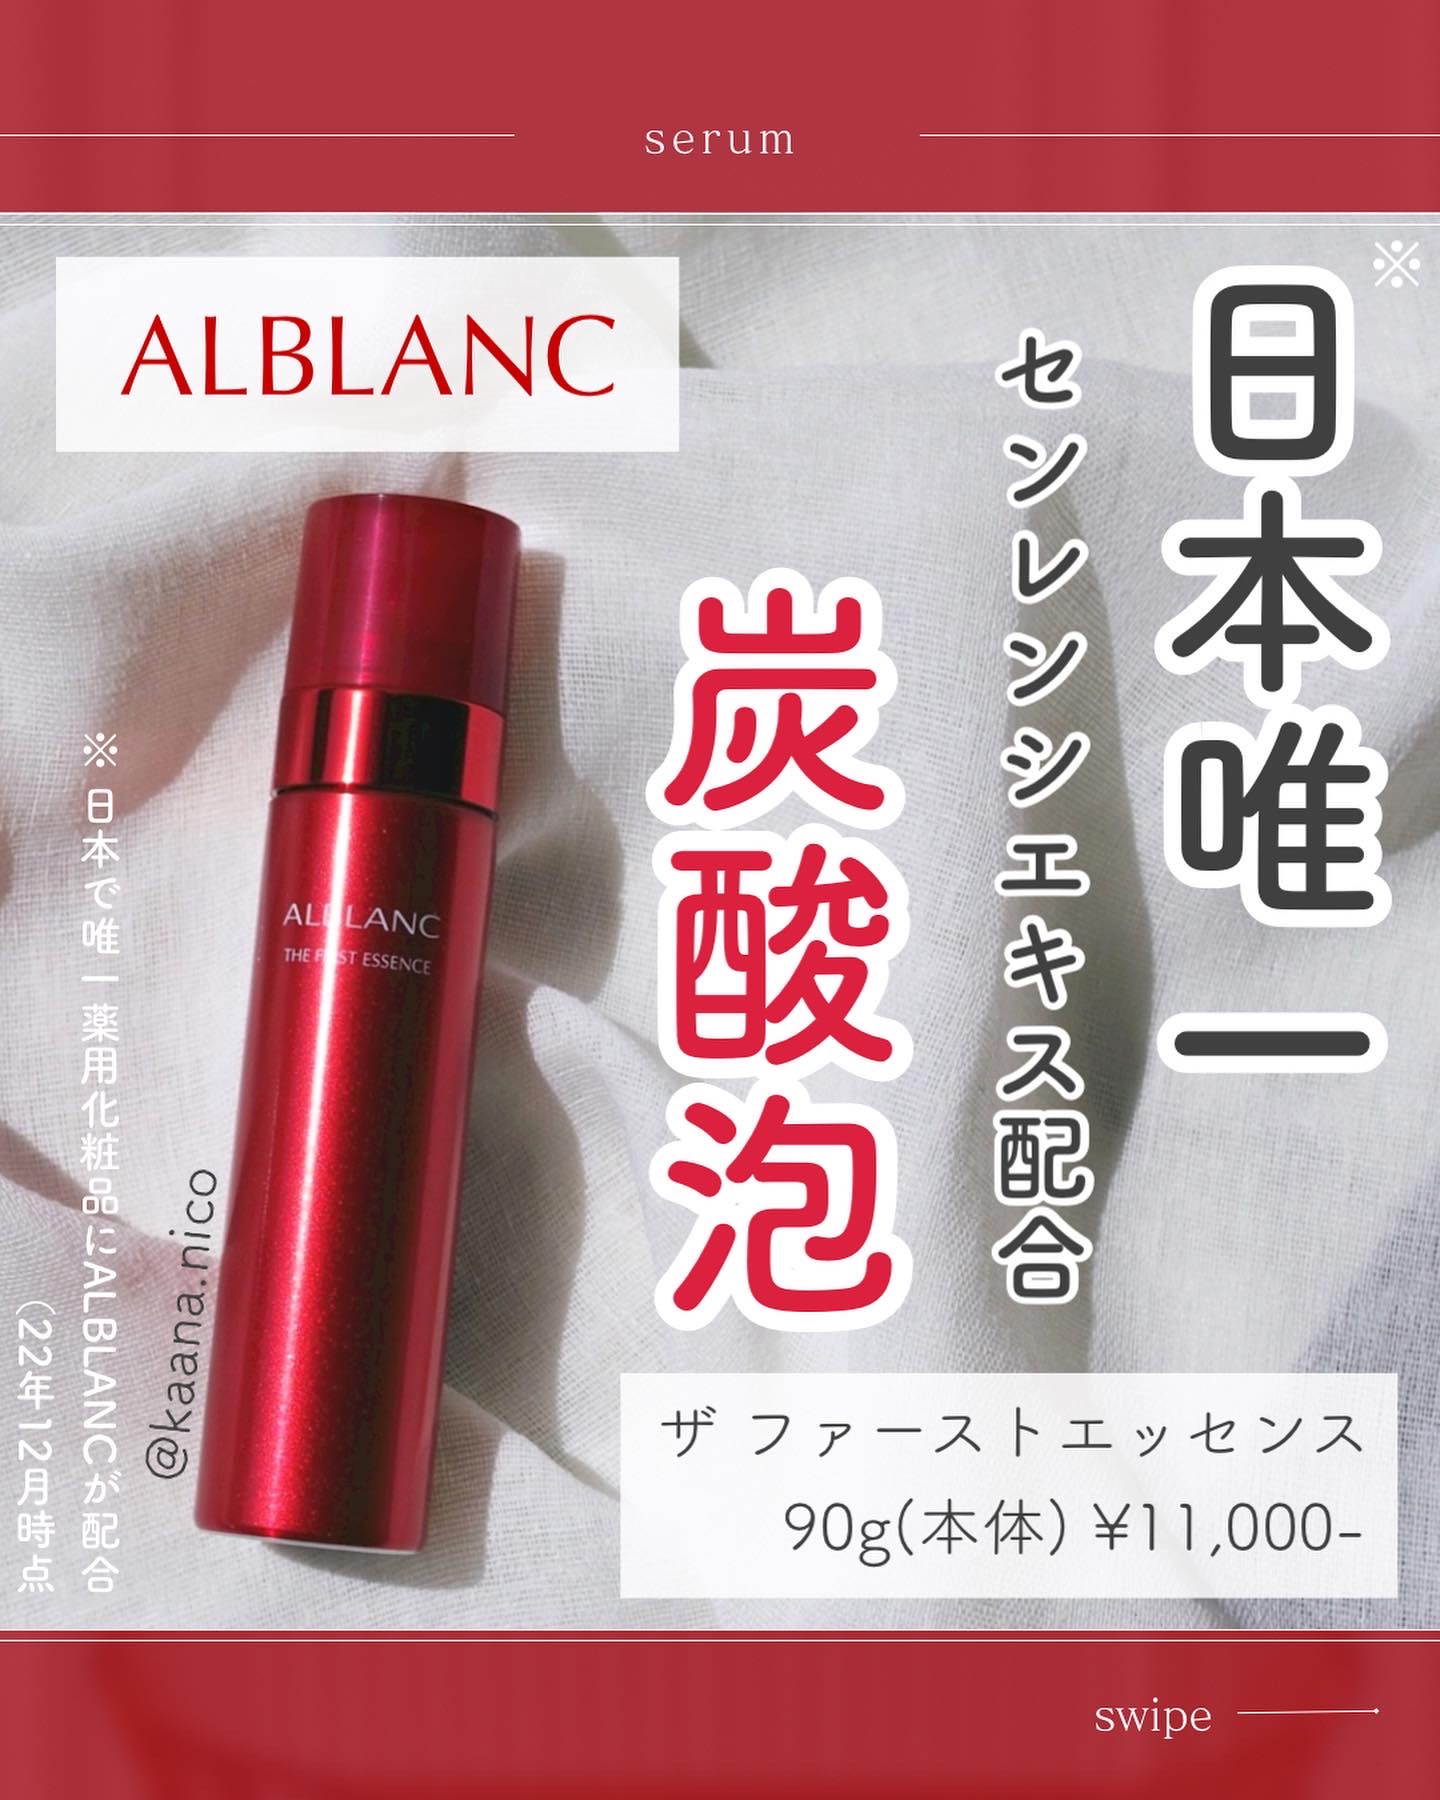 アルブランザファーストエッセンス90グラム - 基礎化粧品